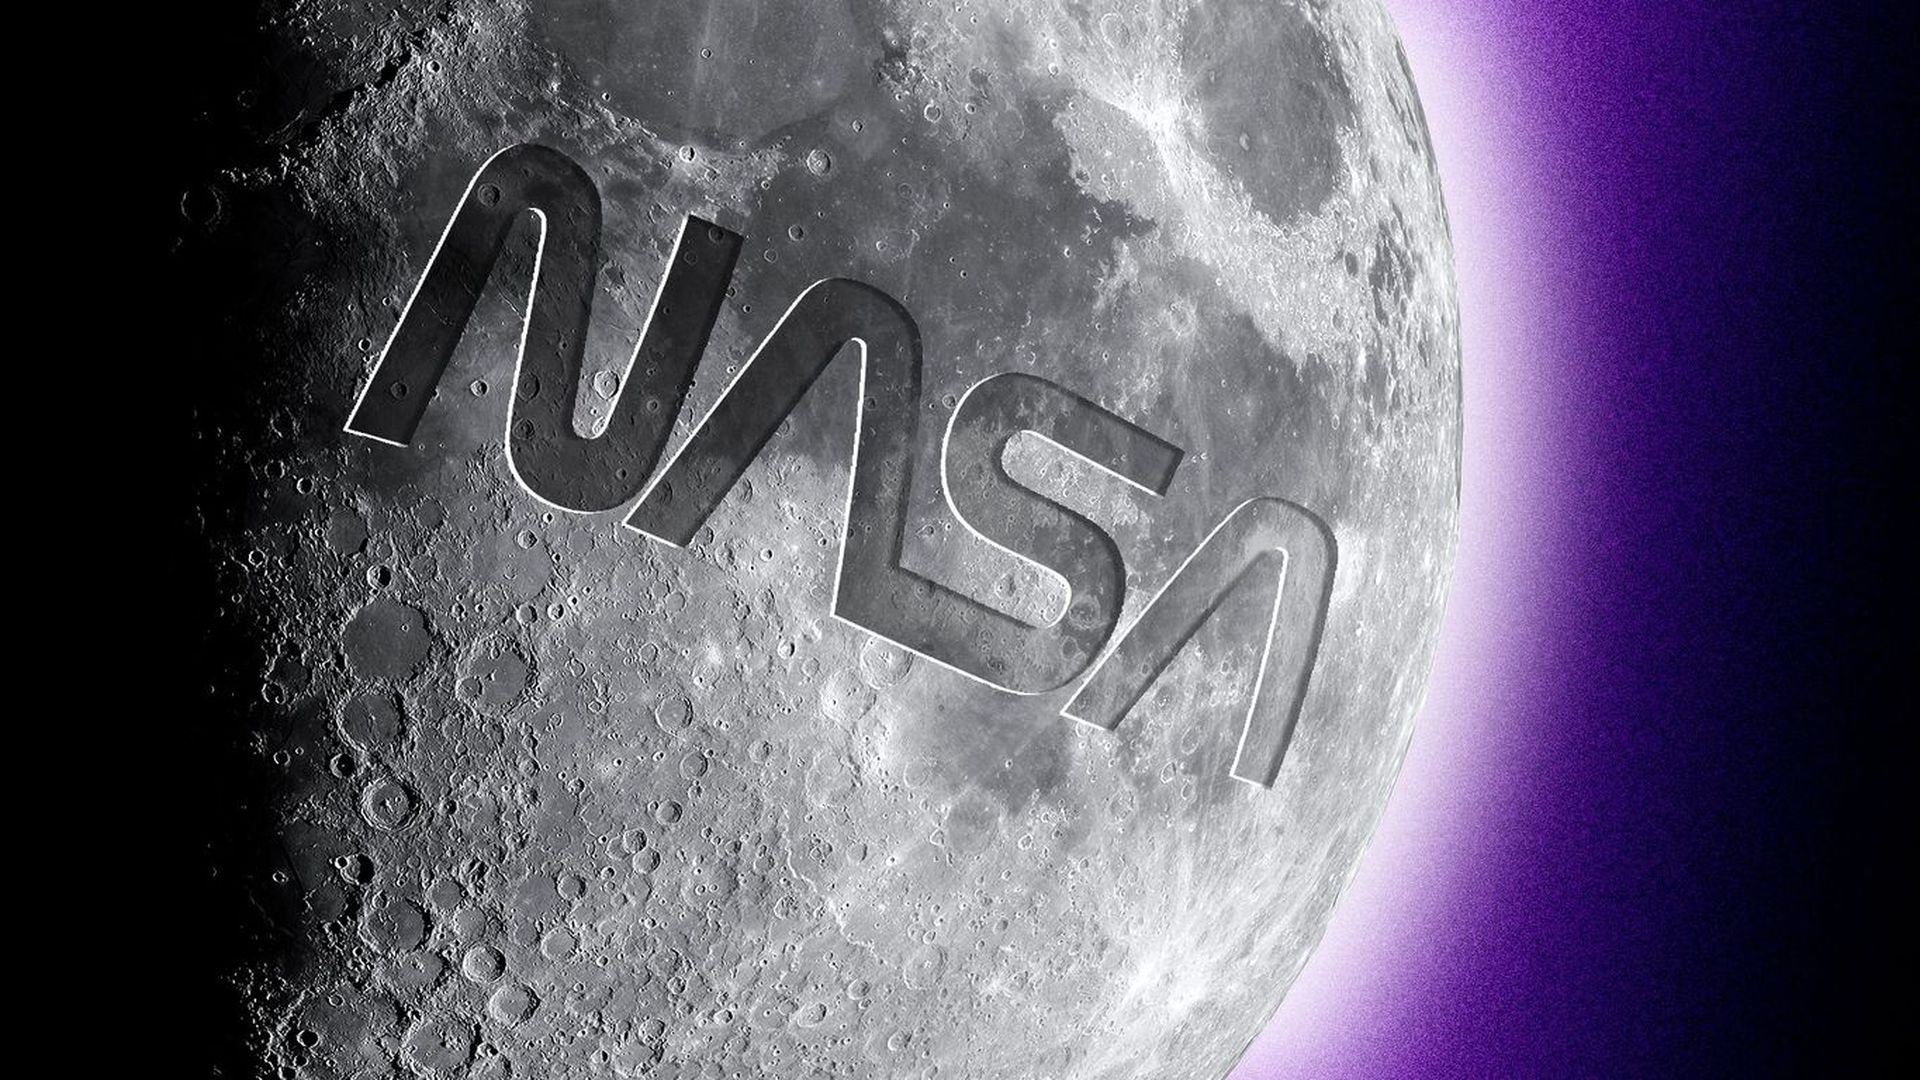 Illustration of NASA logo on moon